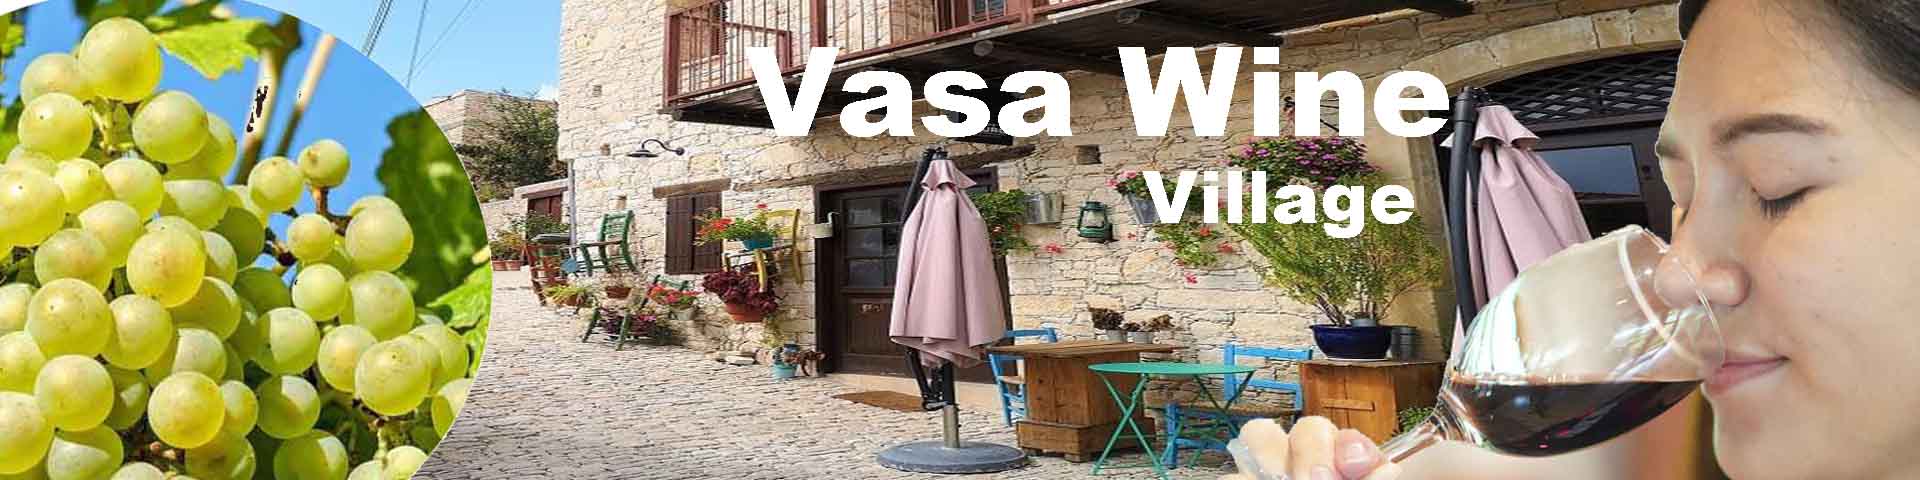 Vasa Wine Village